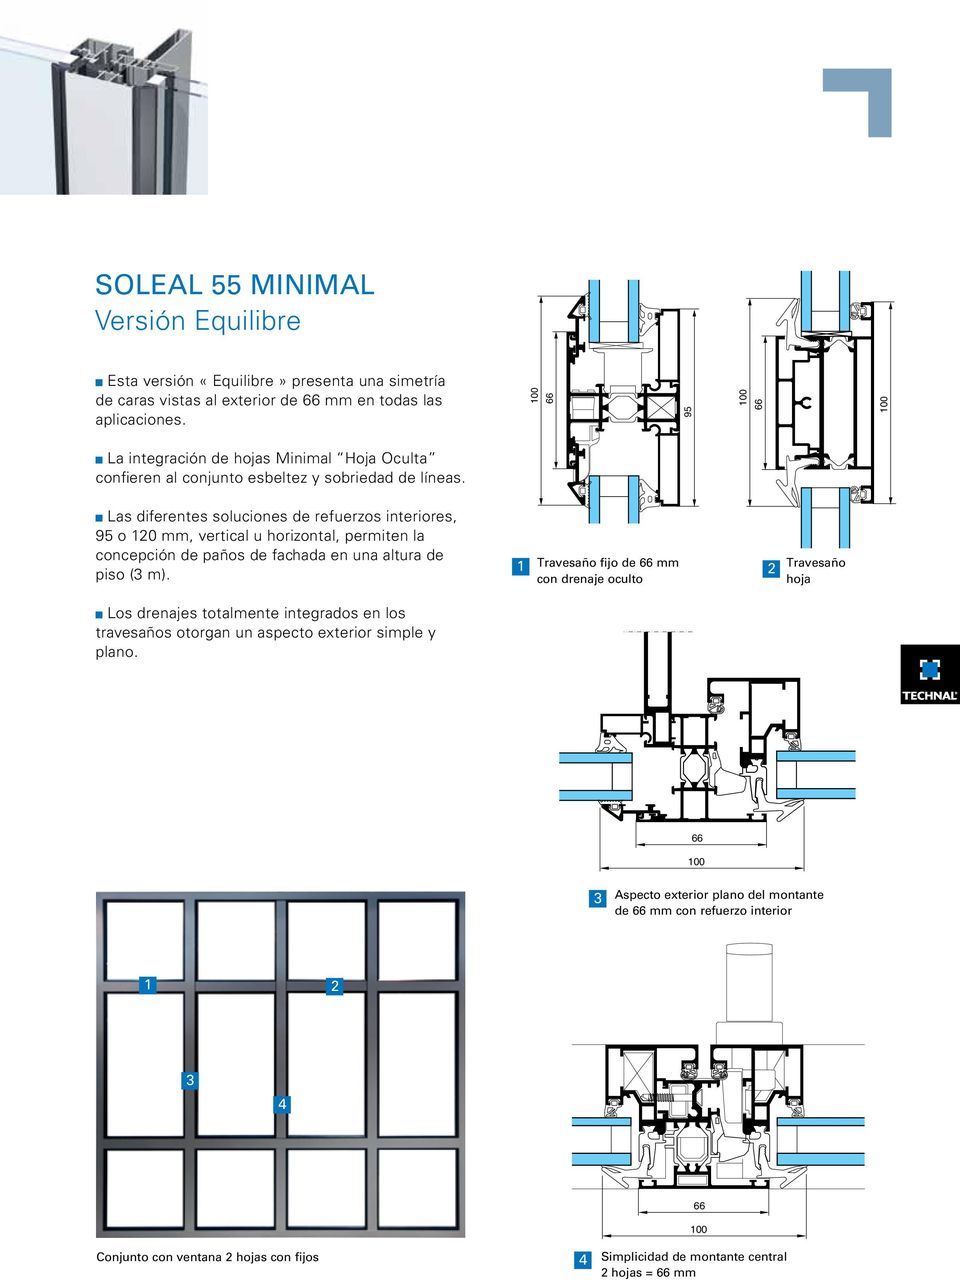 Las diferentes soluciones de refuerzos interiores, 95 o 120 mm, vertical u horizontal, permiten la concepción de paños de fachada en una altura de piso (3 m).